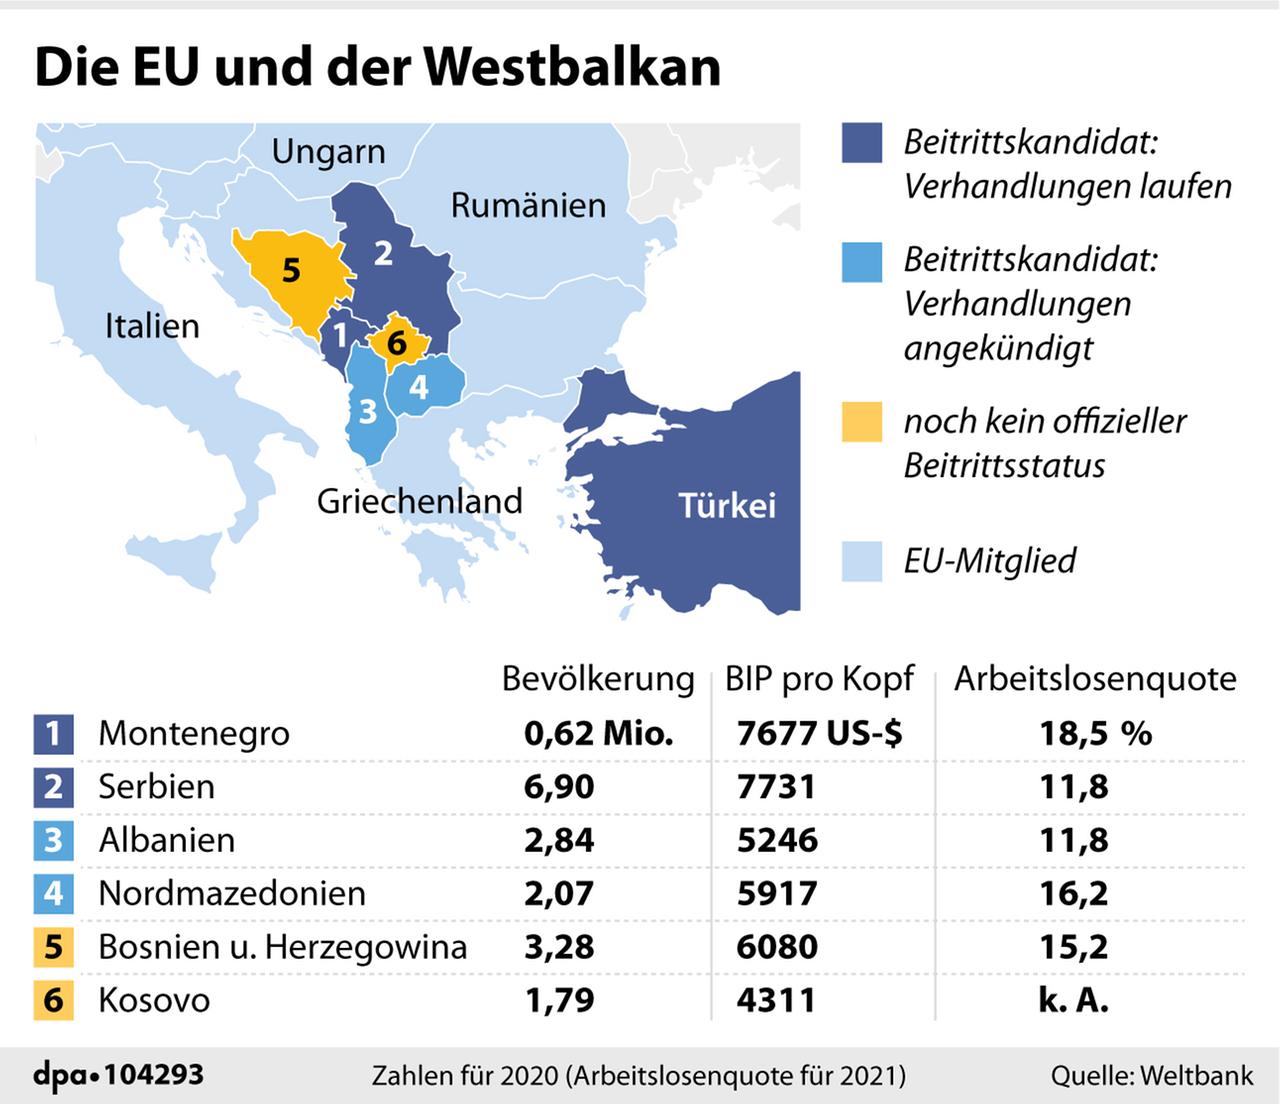 Die Grafik zeigt den Status der potenziellen zukünftigen EU-Mitglieder vom Westbalkan